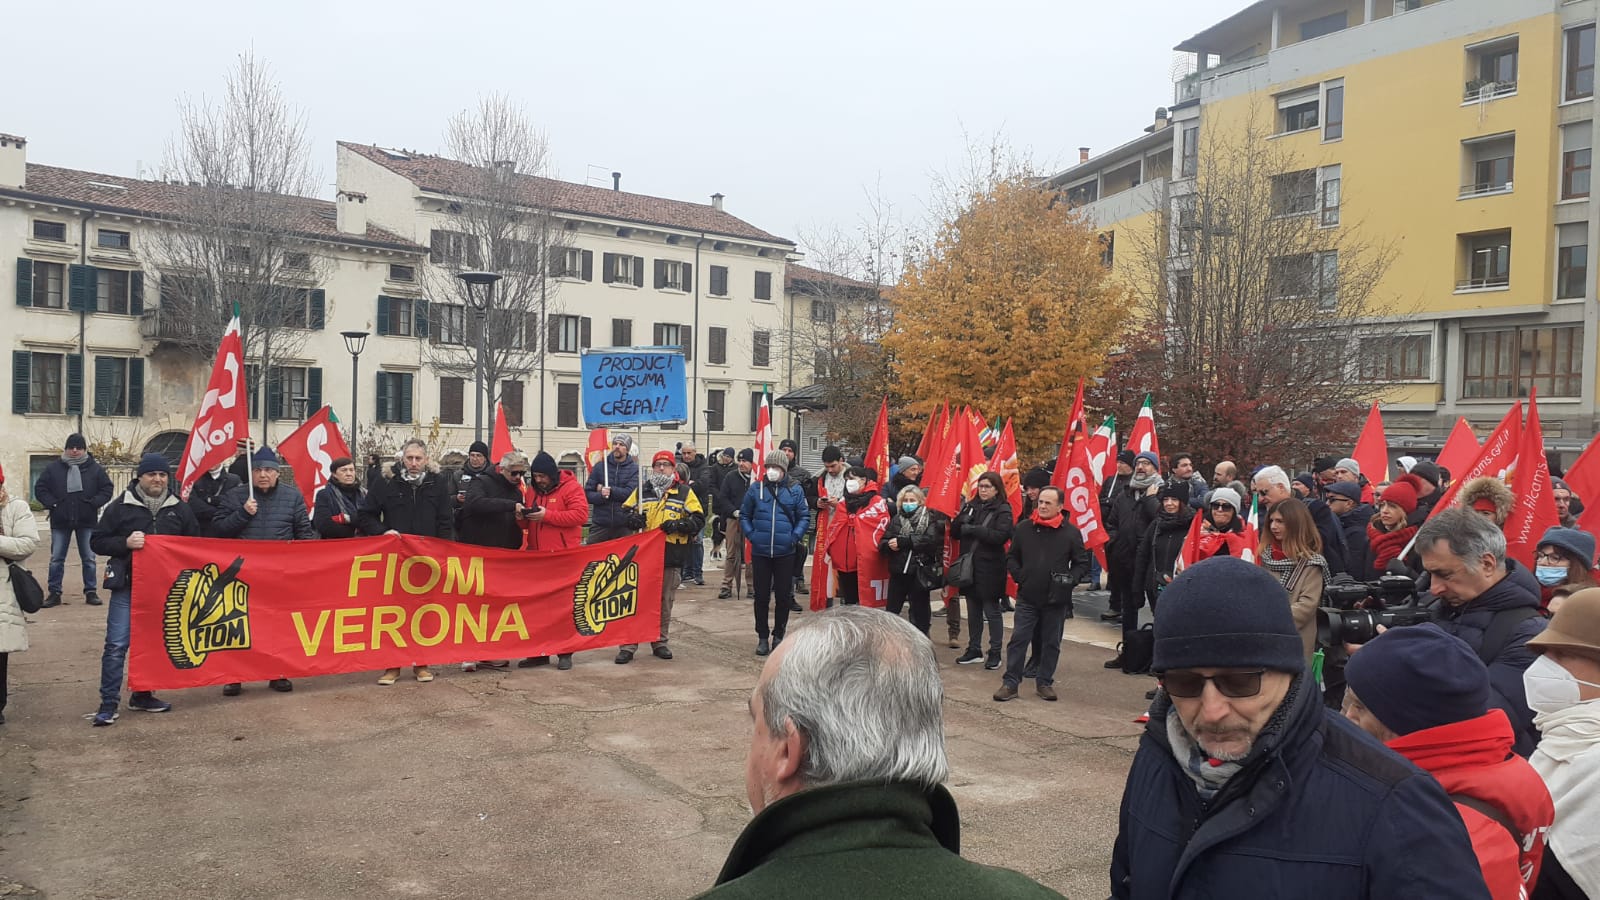 Mondial Forni licenzia altri 15 operai: i sindacati, non è colpa della crisi, ma a scelte sbagliate